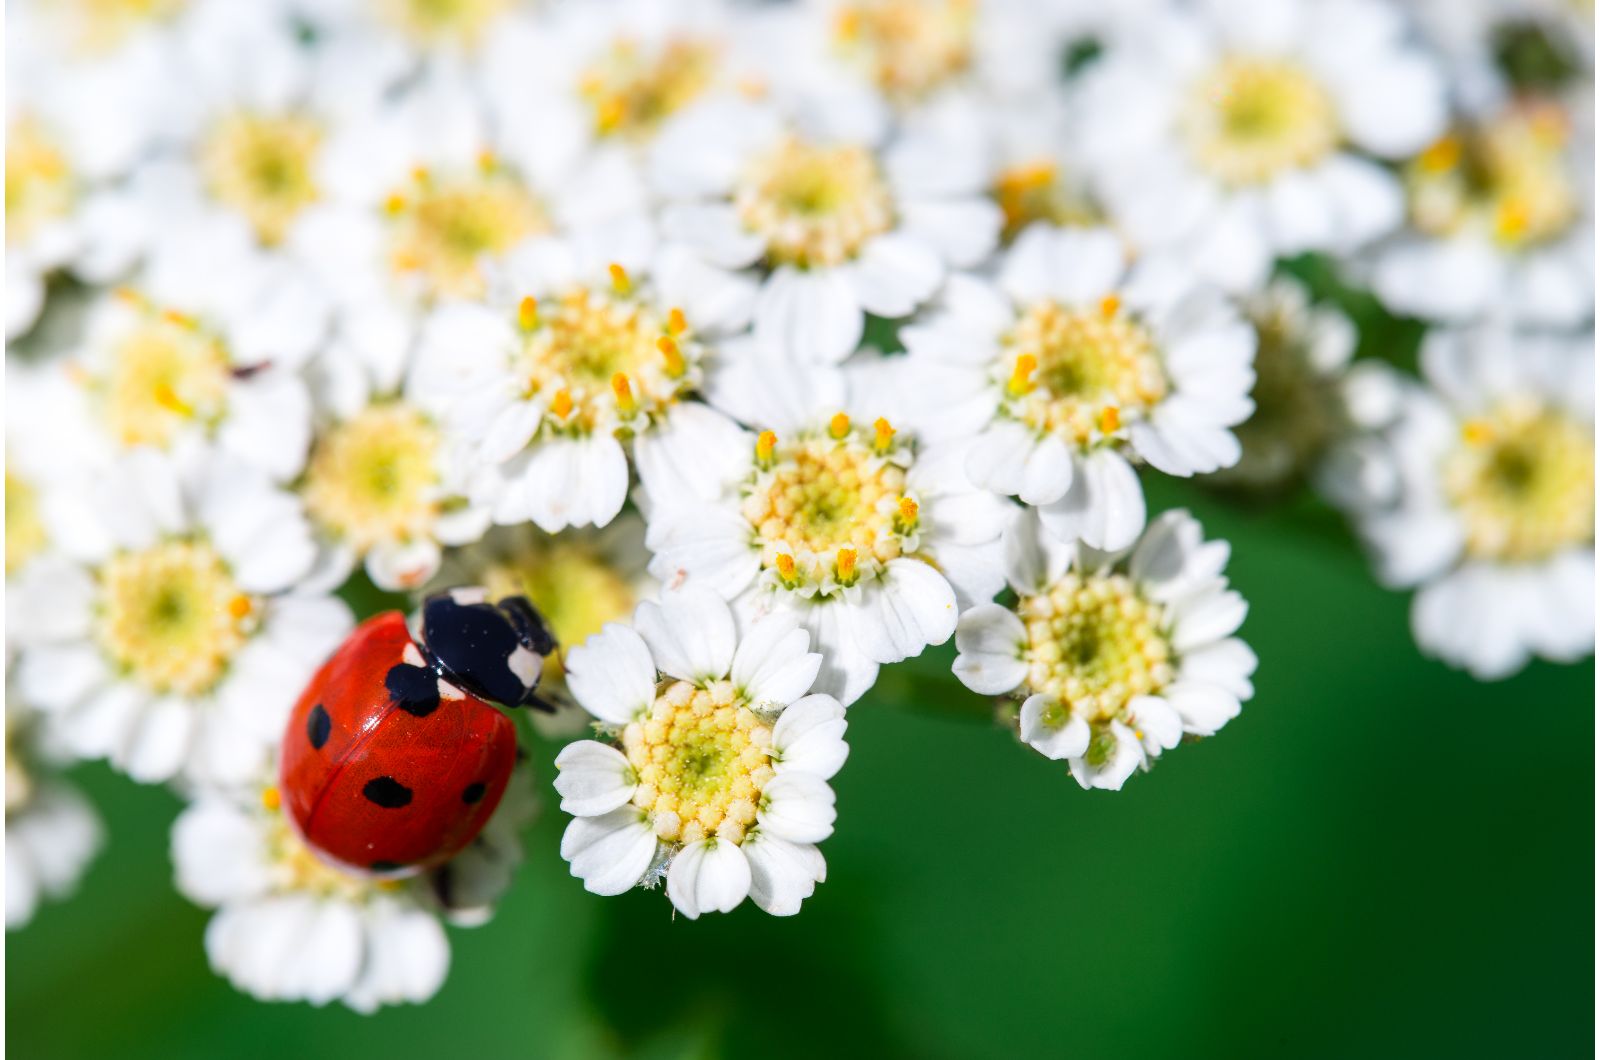 ladybug on a white flowers